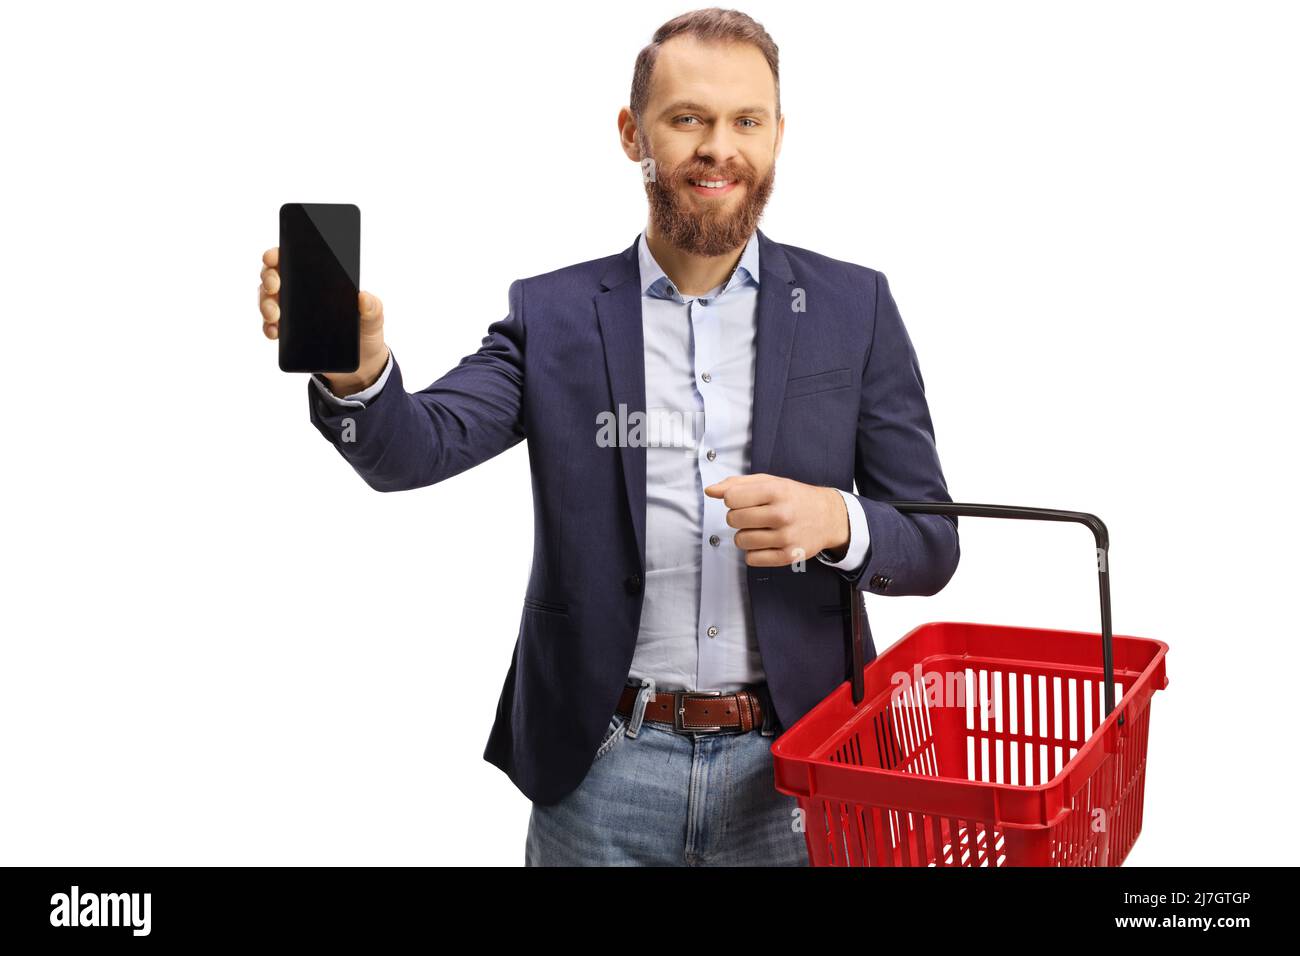 Sorridente giovane uomo che tiene un carrello vuoto e mostra un telefono cellulare isolato su sfondo bianco Foto Stock